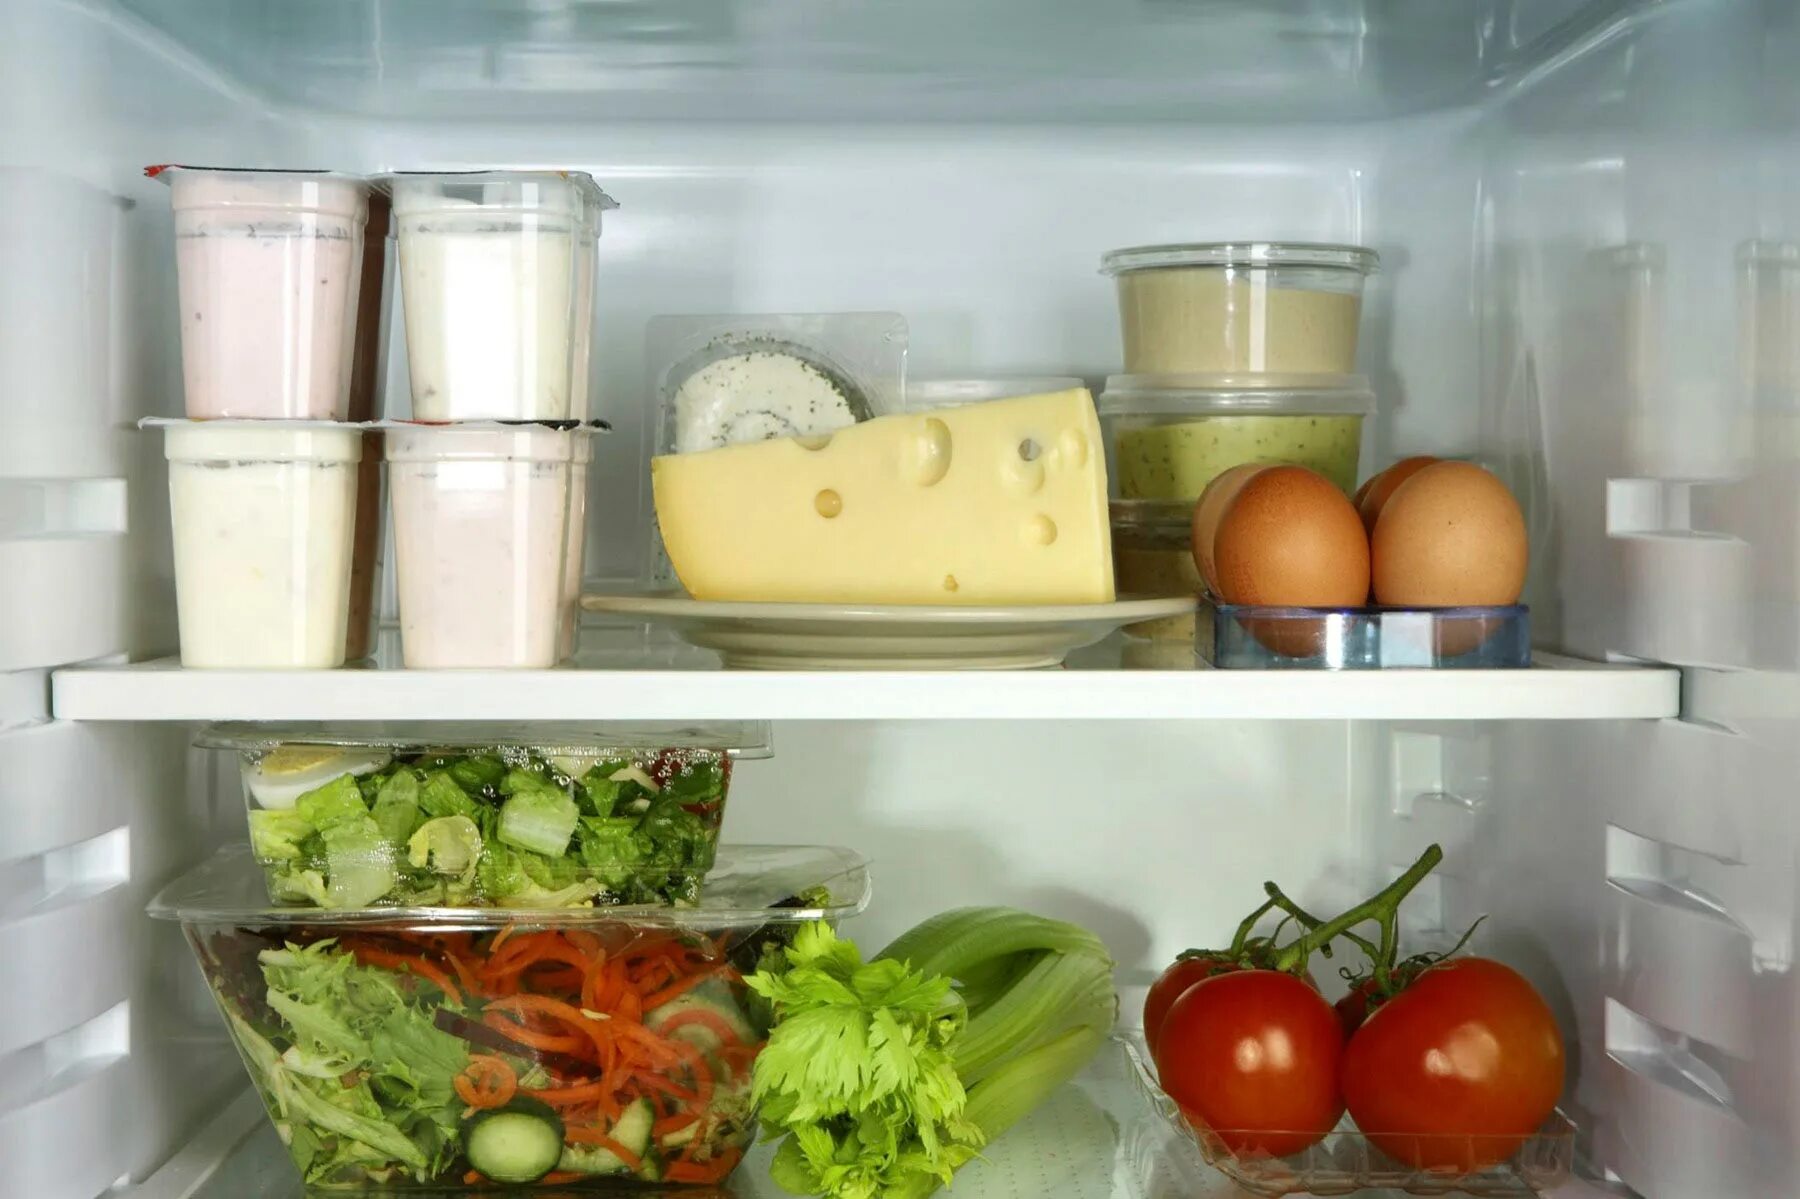 Необходимые товары для жизни. Холодильник с продуктами. Хранение продуктов. Проддуктыв холодильнике. Хранение продуктов в холодильнике.